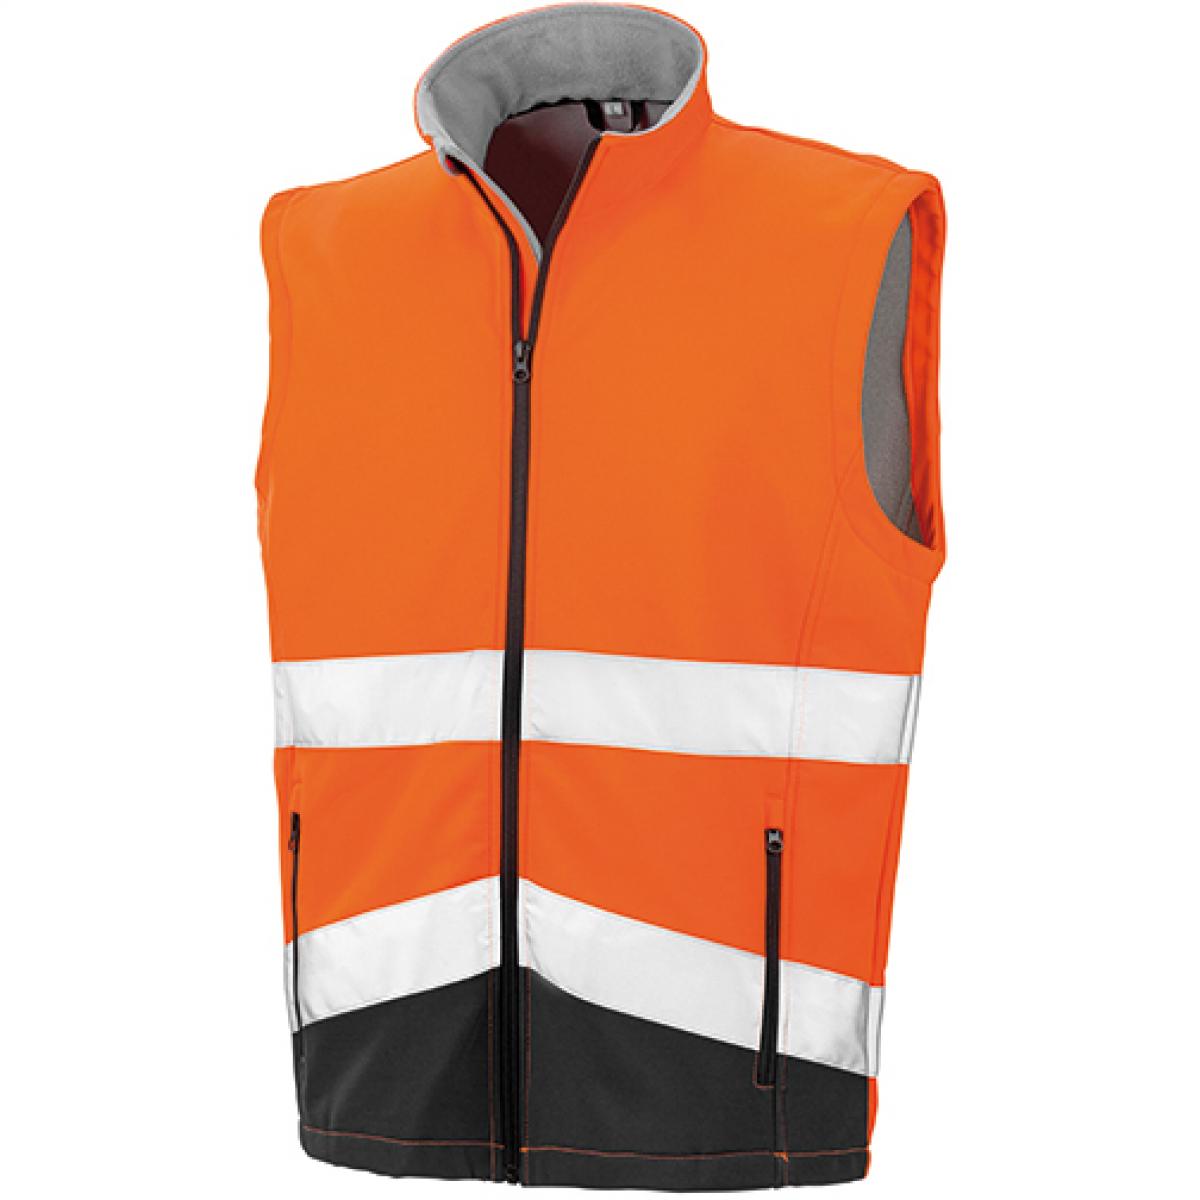 Hersteller: Result Herstellernummer: R451X Artikelbezeichnung: Herren Printable Safety Softshell Gilet Farbe: Fluorescent Orange/Black